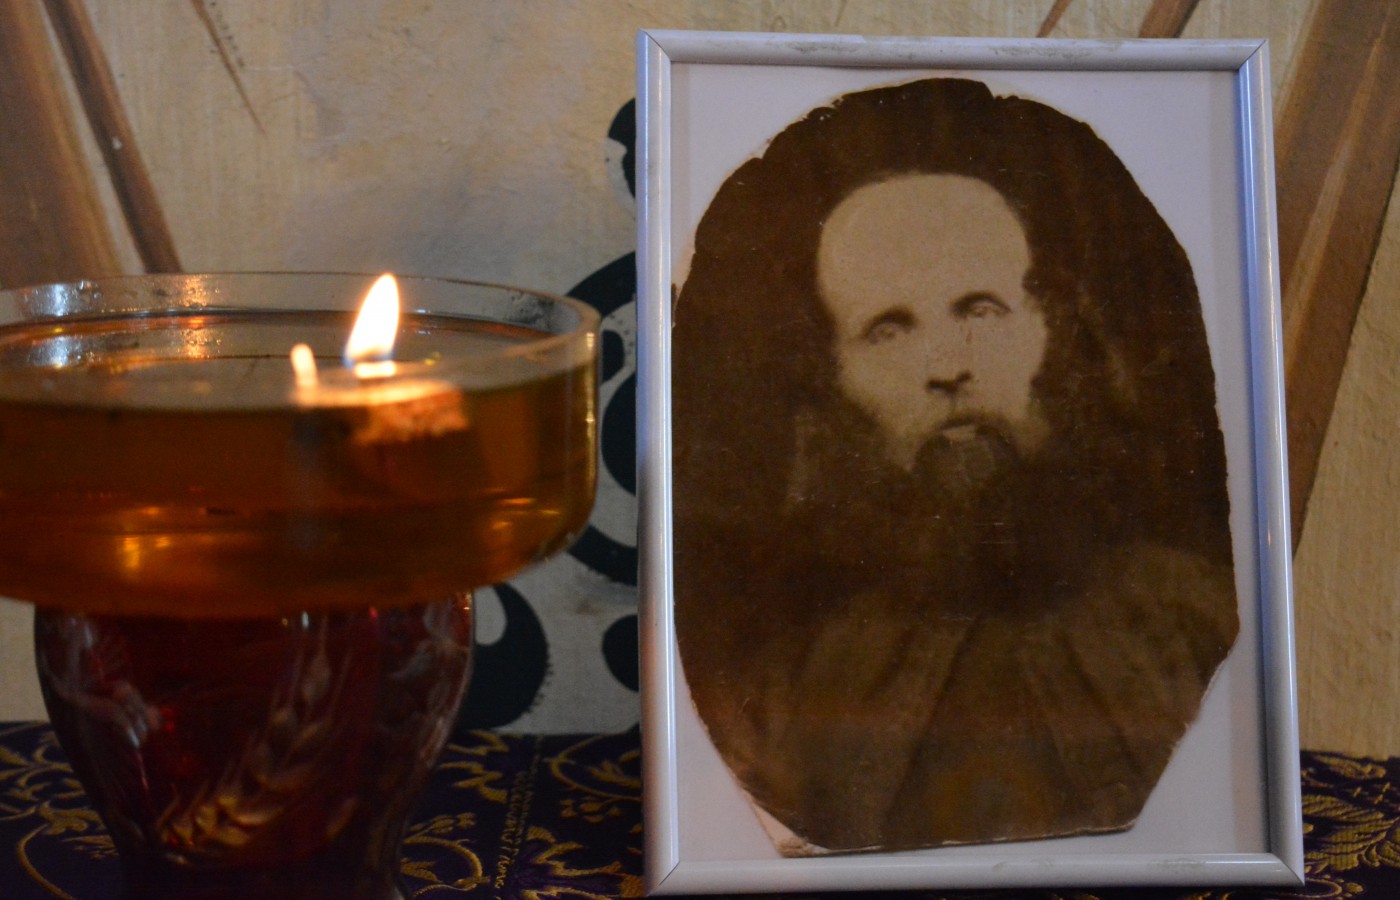 Părintele Toma Gherasimescu, mărturisitor în temnițele comuniste, comemorat astăzi la Iacobeni.